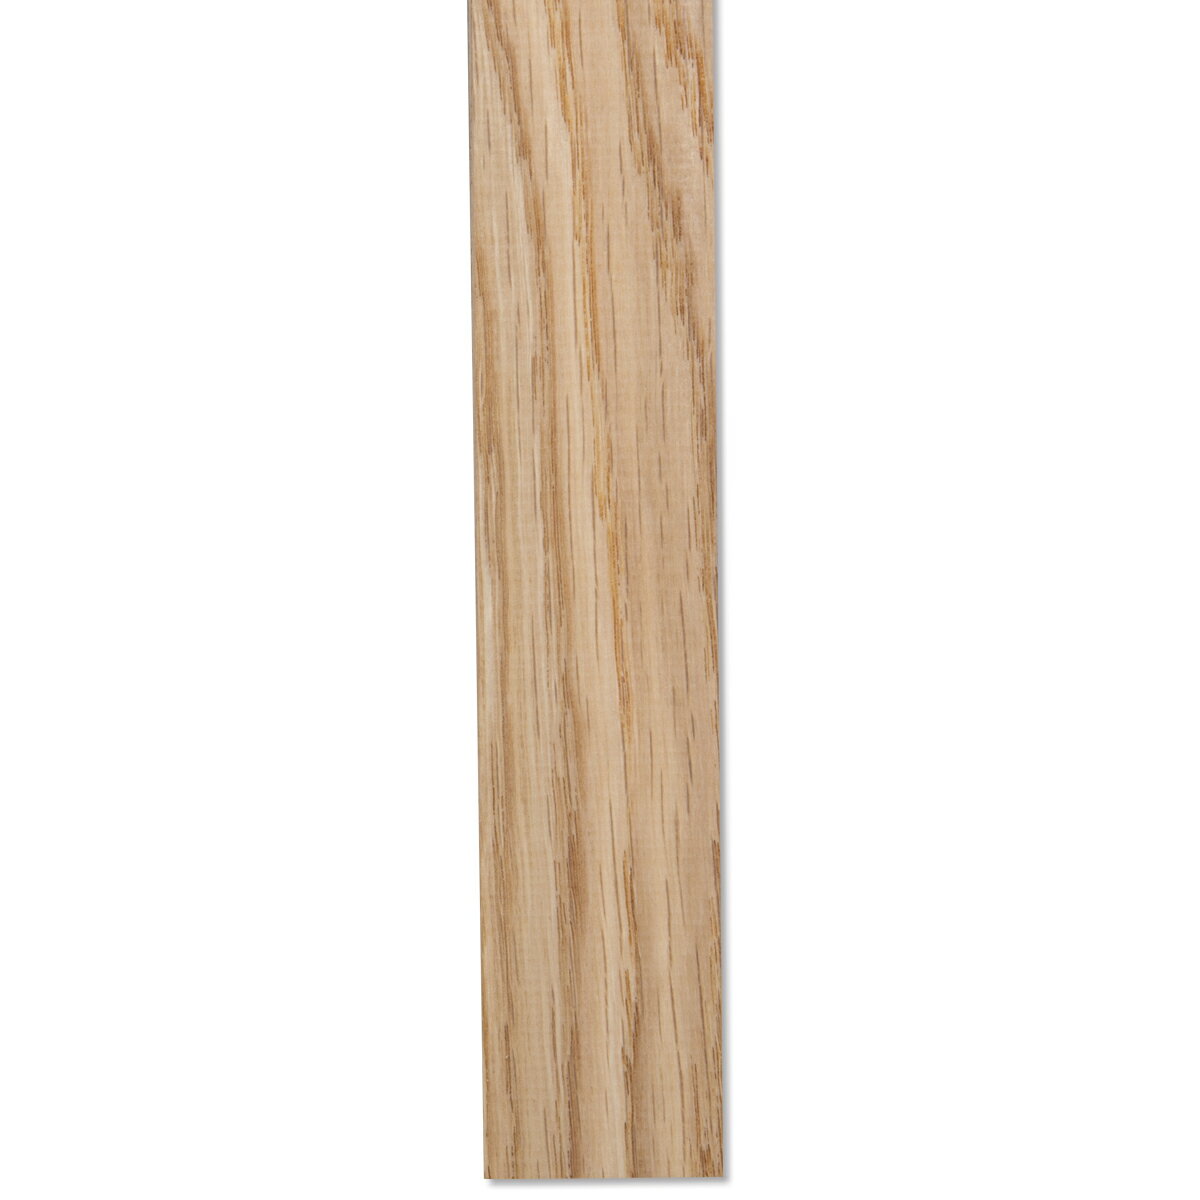 ホワイトオーク 木簡 約300×30×5mm 10本組 【 木材 木工 木 板 オーク オーク材 ホワイトオーク材 】